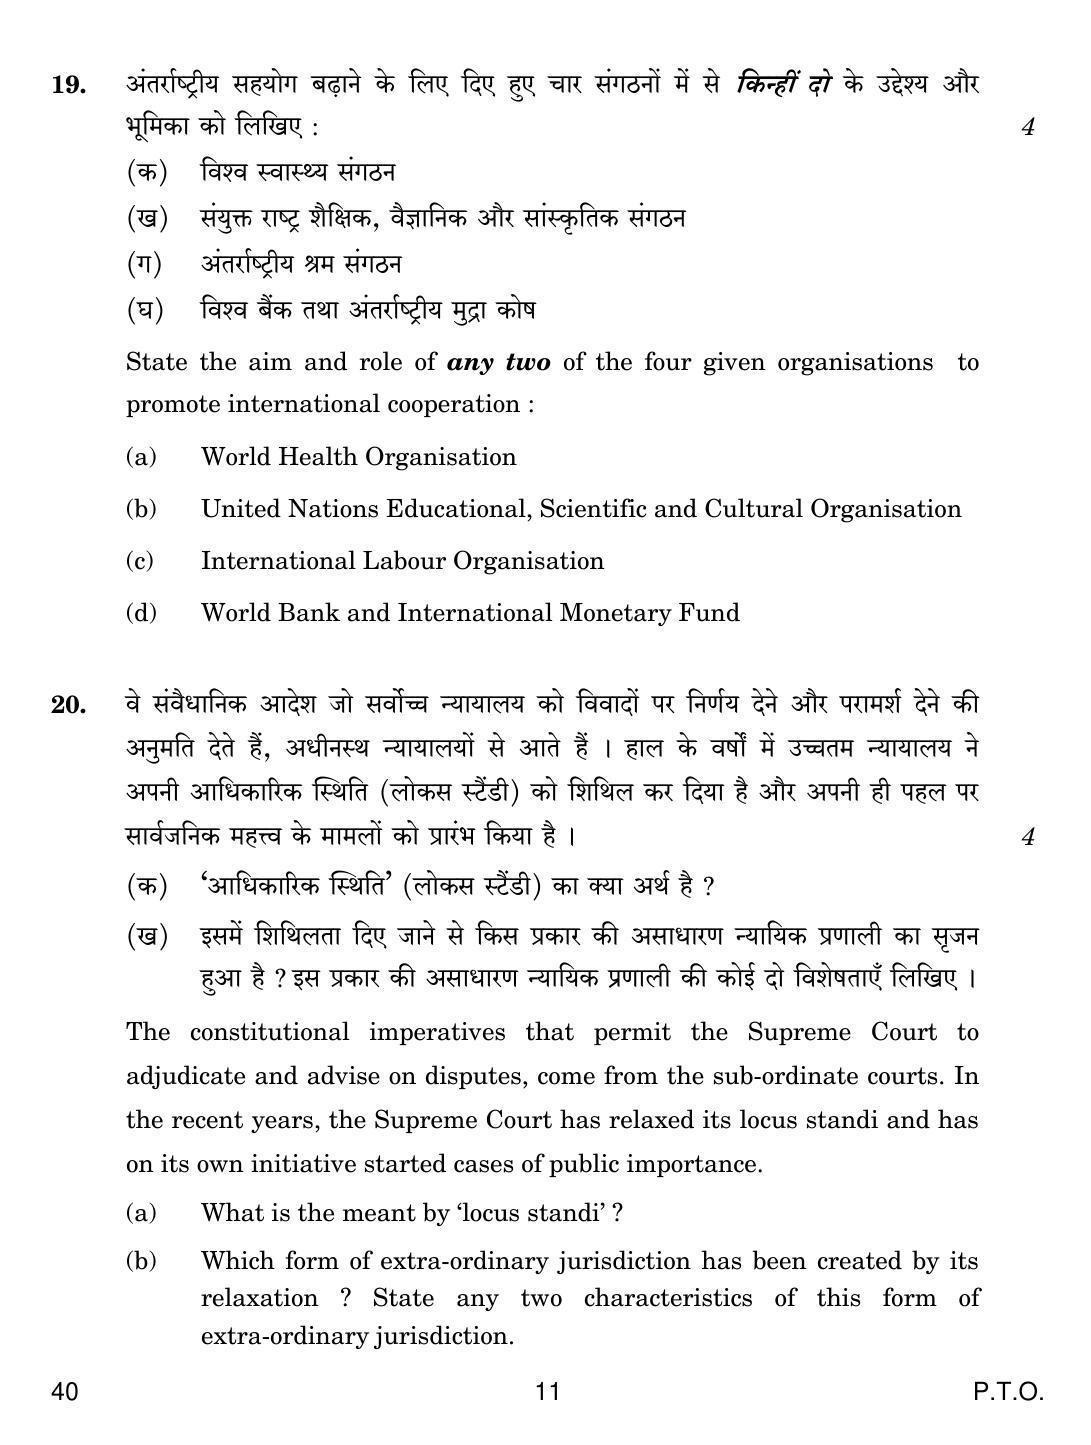 CBSE Class 12 40 Legal Studies 2019 Question Paper - Page 11